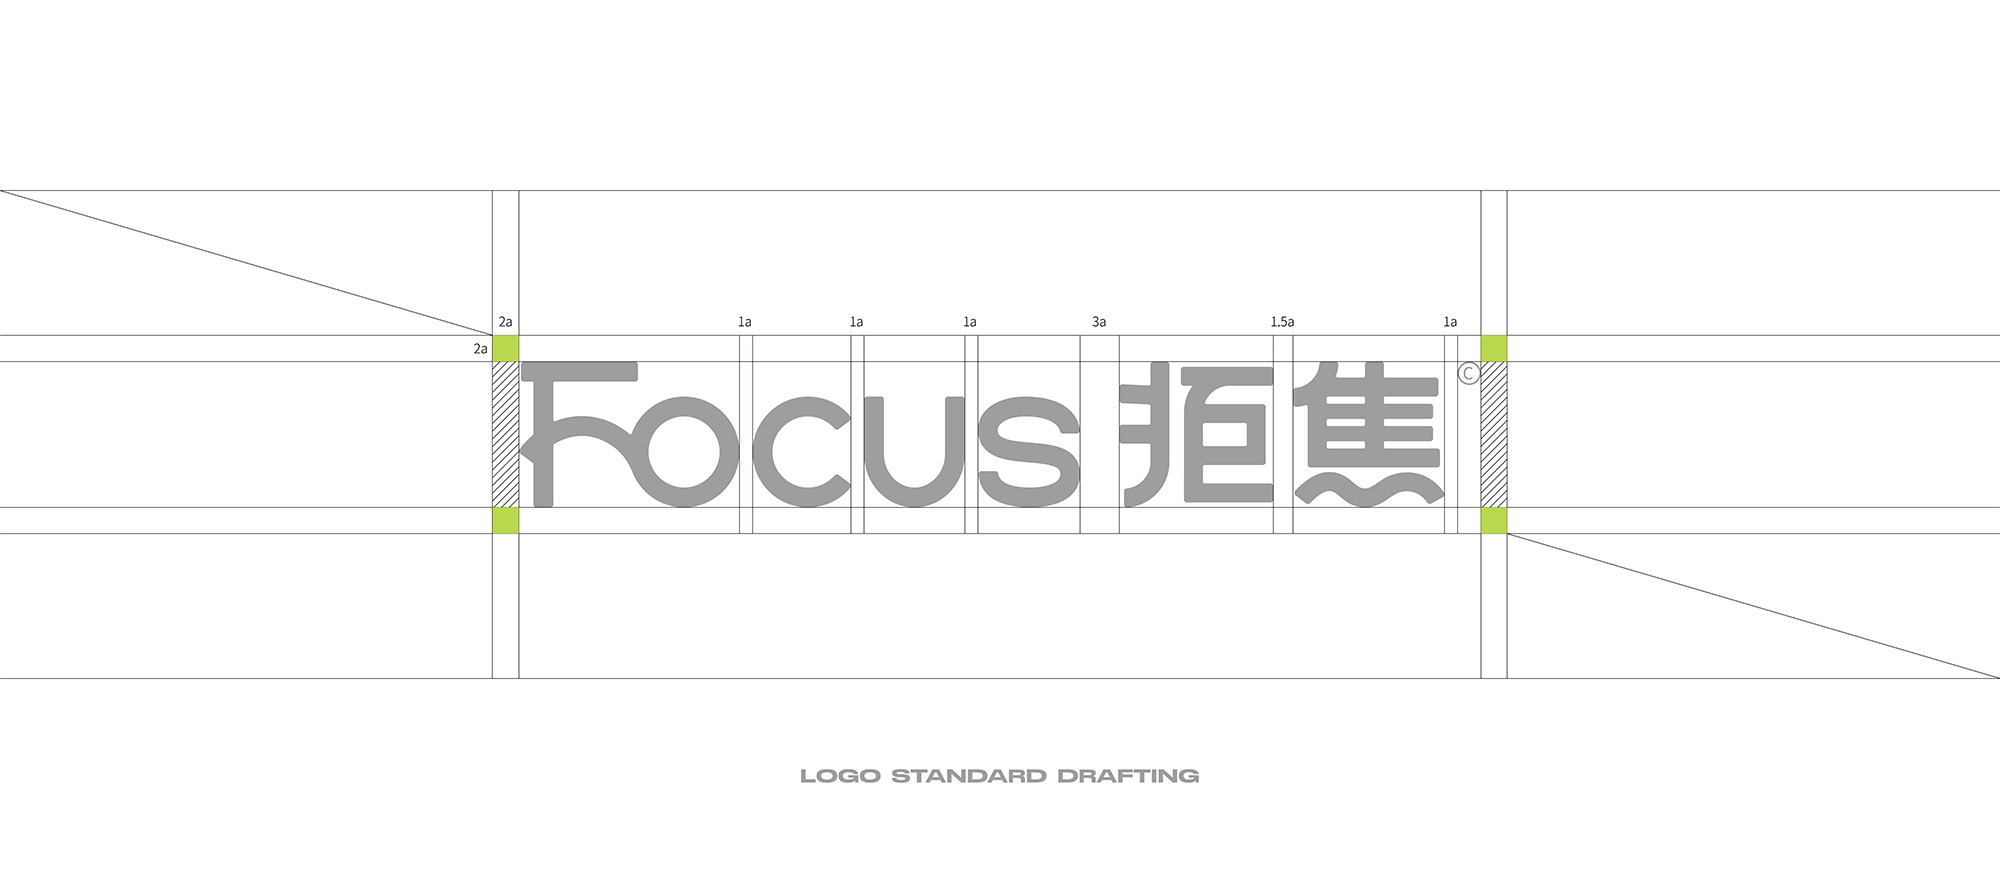 [Focus拒焦] 咖啡品牌设计